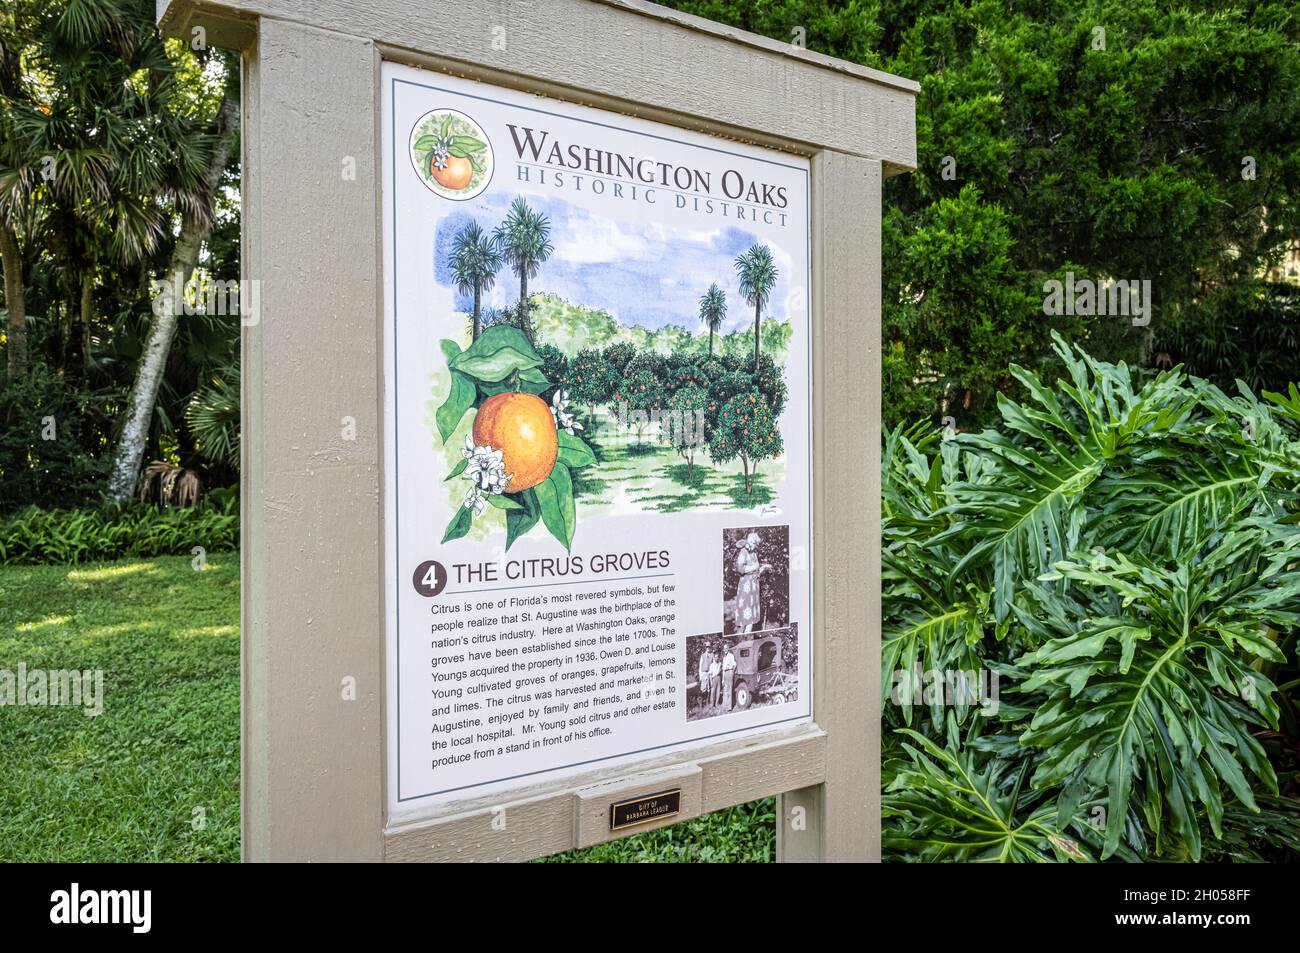 Signalisation pour la zone Citrus Groves du quartier historique de Washington Oaks dans le parc national de Washington Oaks Gardens à Palm Coast, Floride.(ÉTATS-UNIS) Banque D'Images